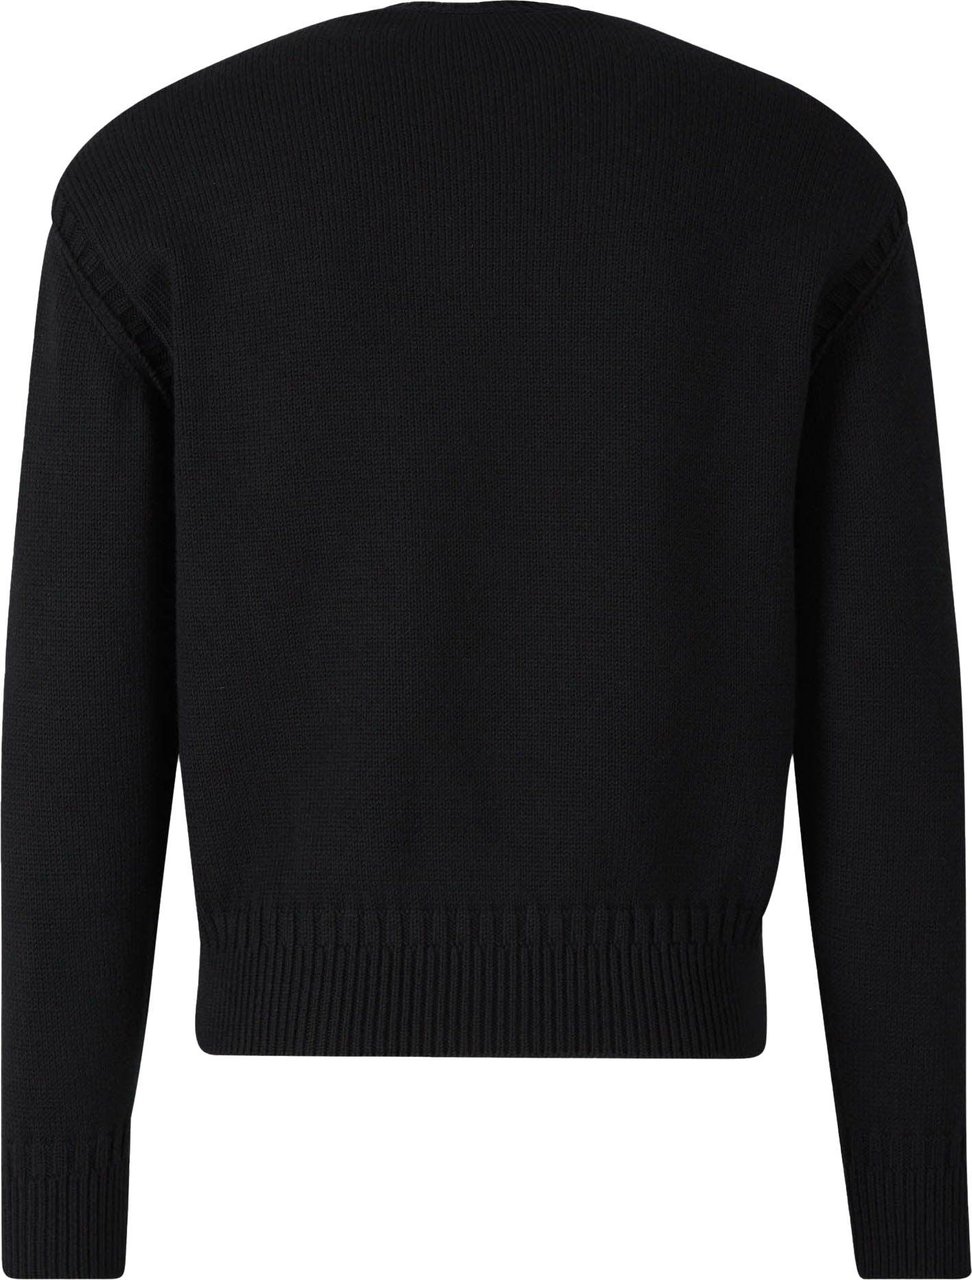 Alexander McQueen Knitted Logo 92 Sweater Zwart